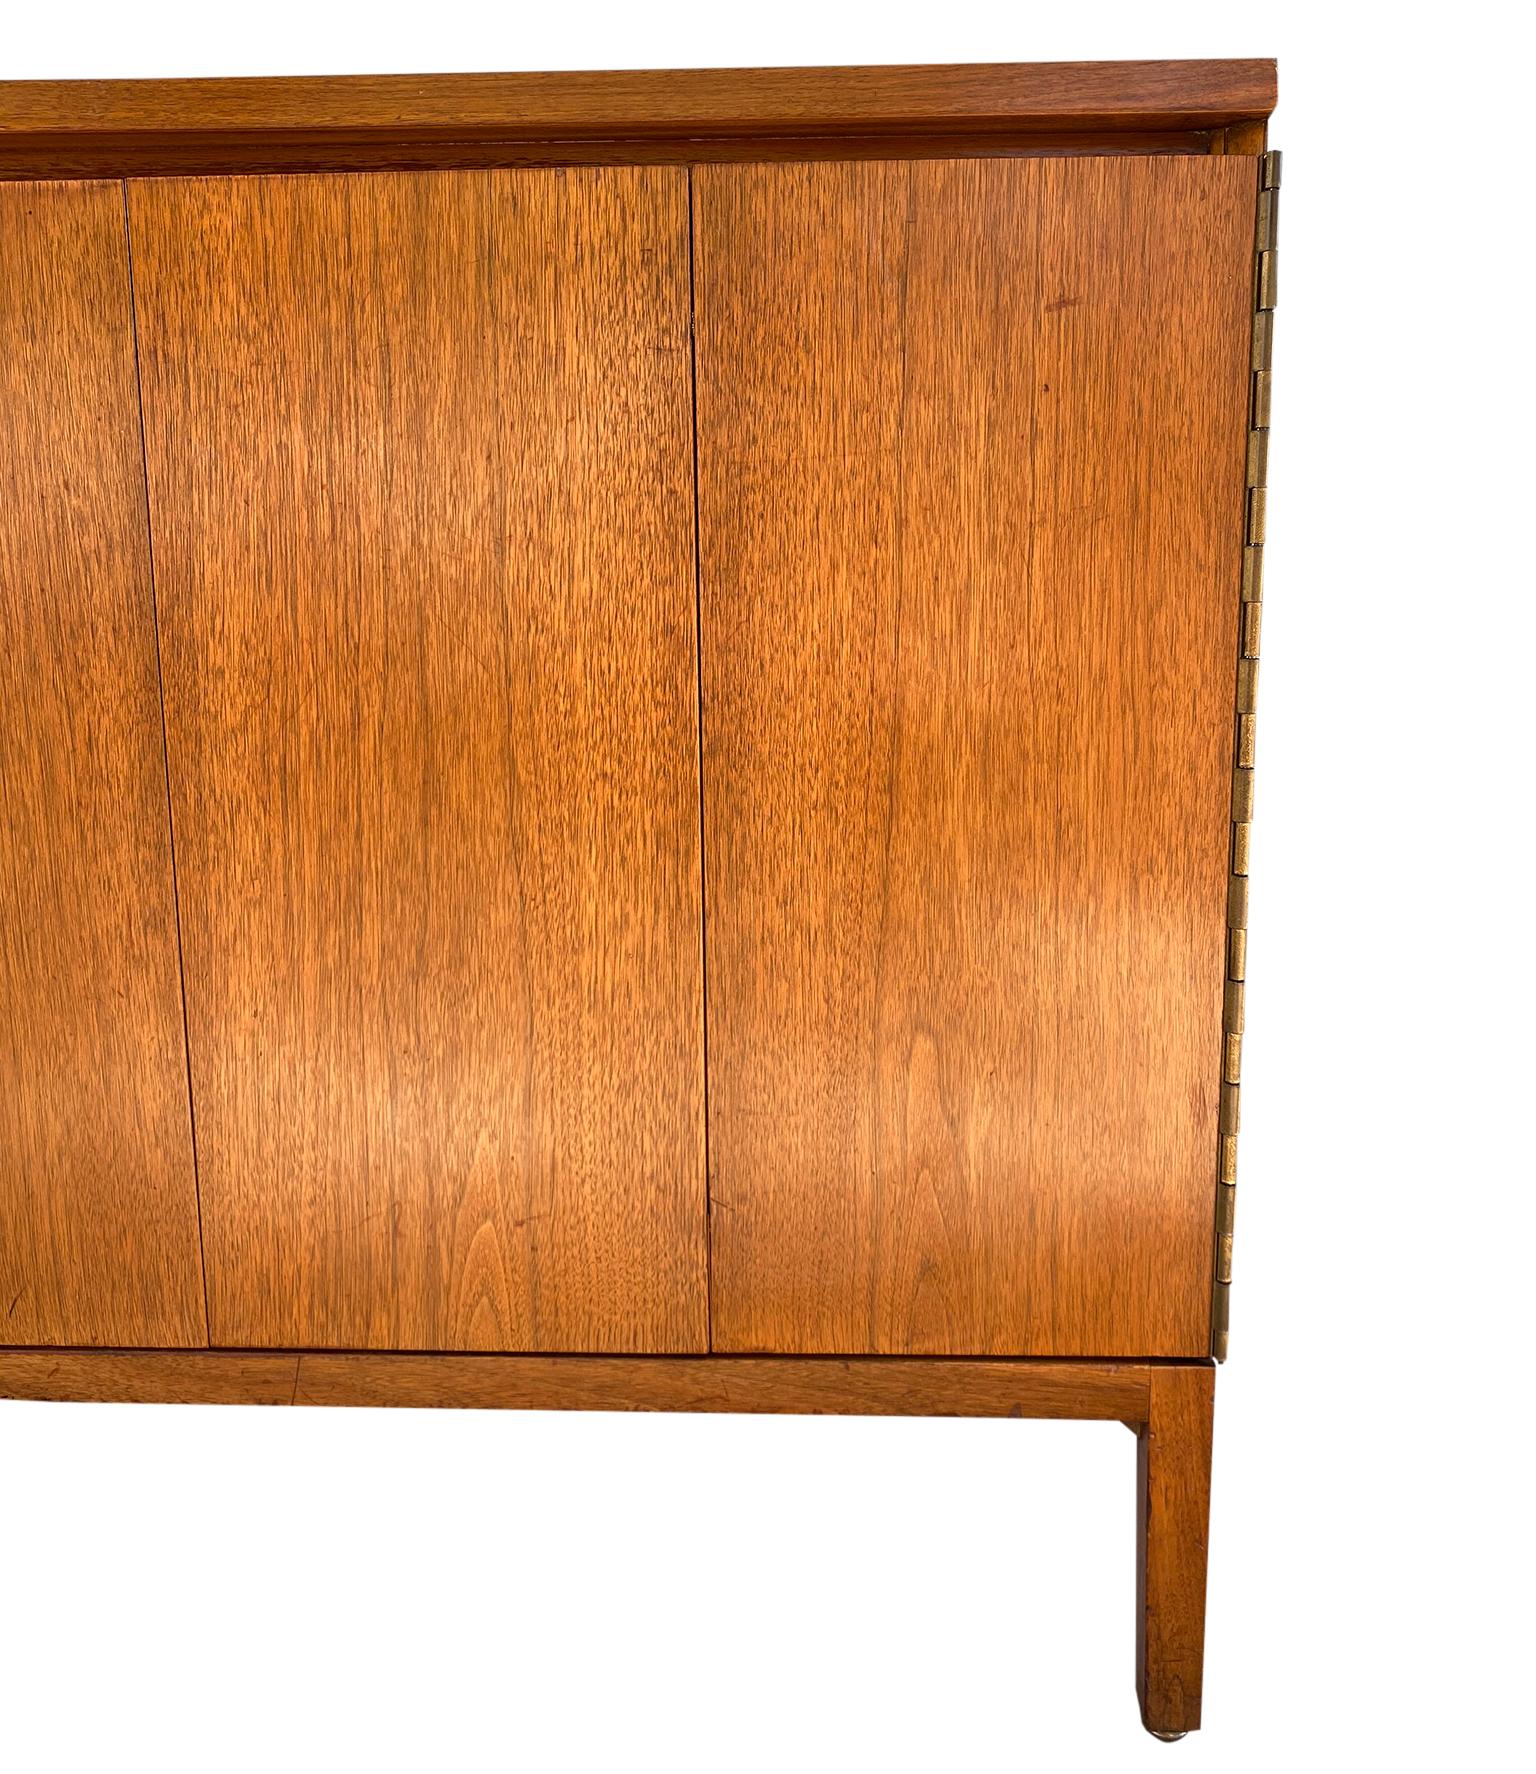 Brass Stunning Midcentury Paul McCobb Calvin 4-Drawer Dresser Credenza #7305 Walnut